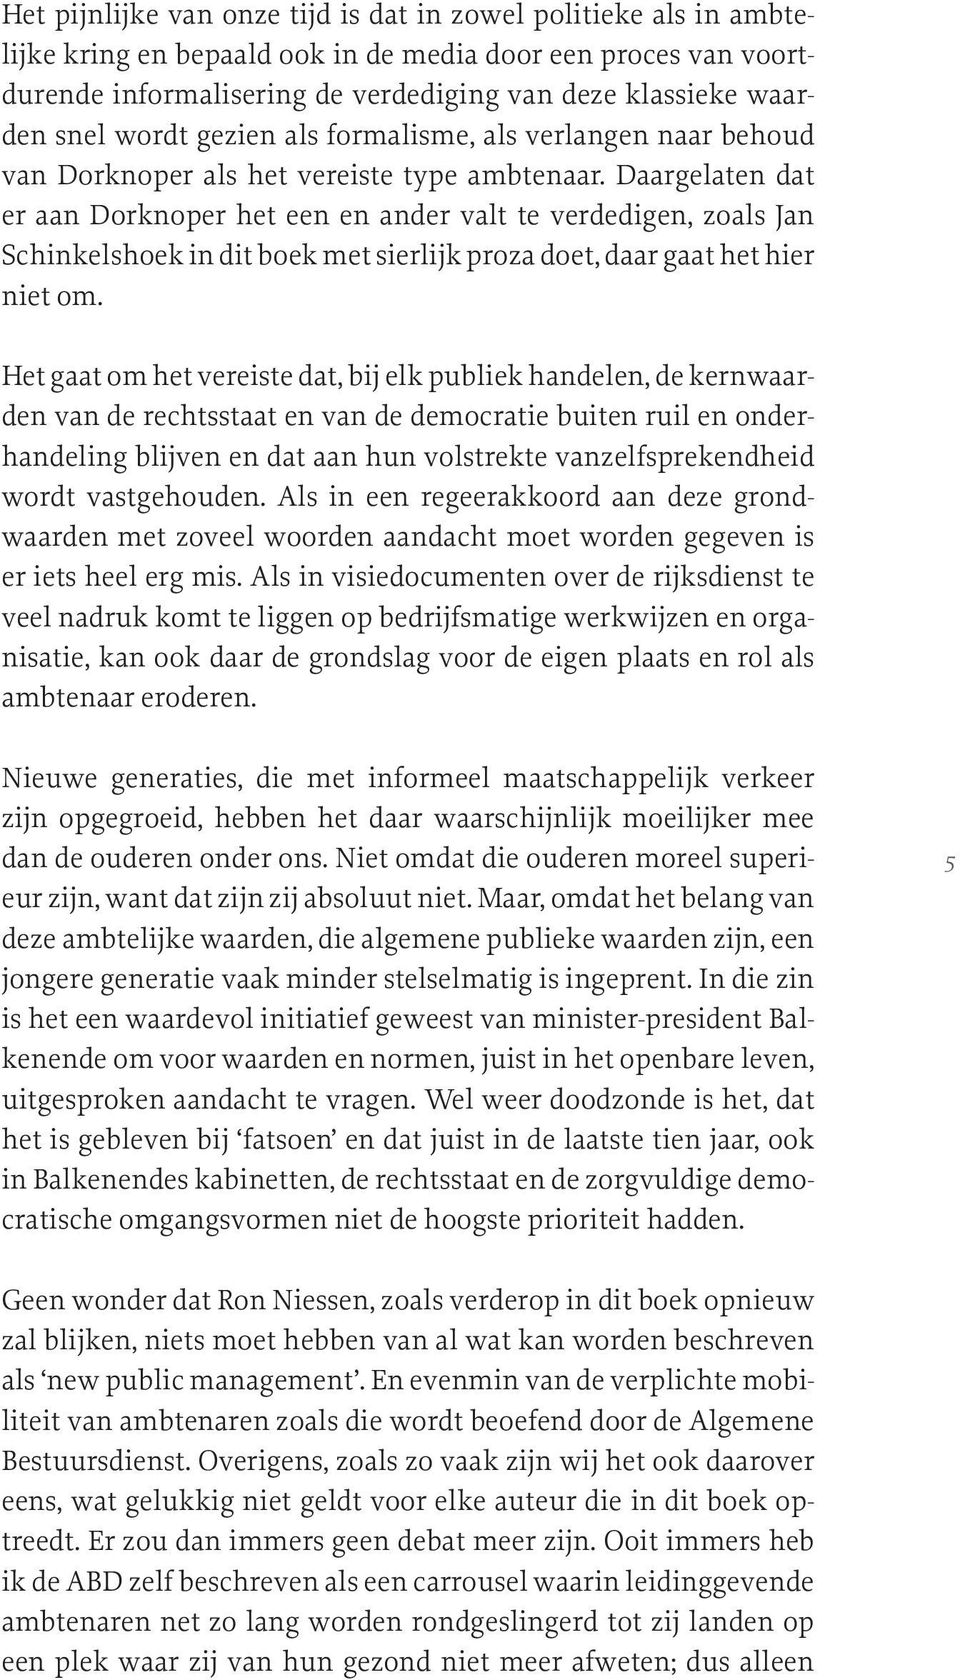 Daargelaten dat er aan Dorknoper het een en ander valt te verdedigen, zoals Jan Schinkelshoek in dit boek met sierlijk proza doet, daar gaat het hier niet om.